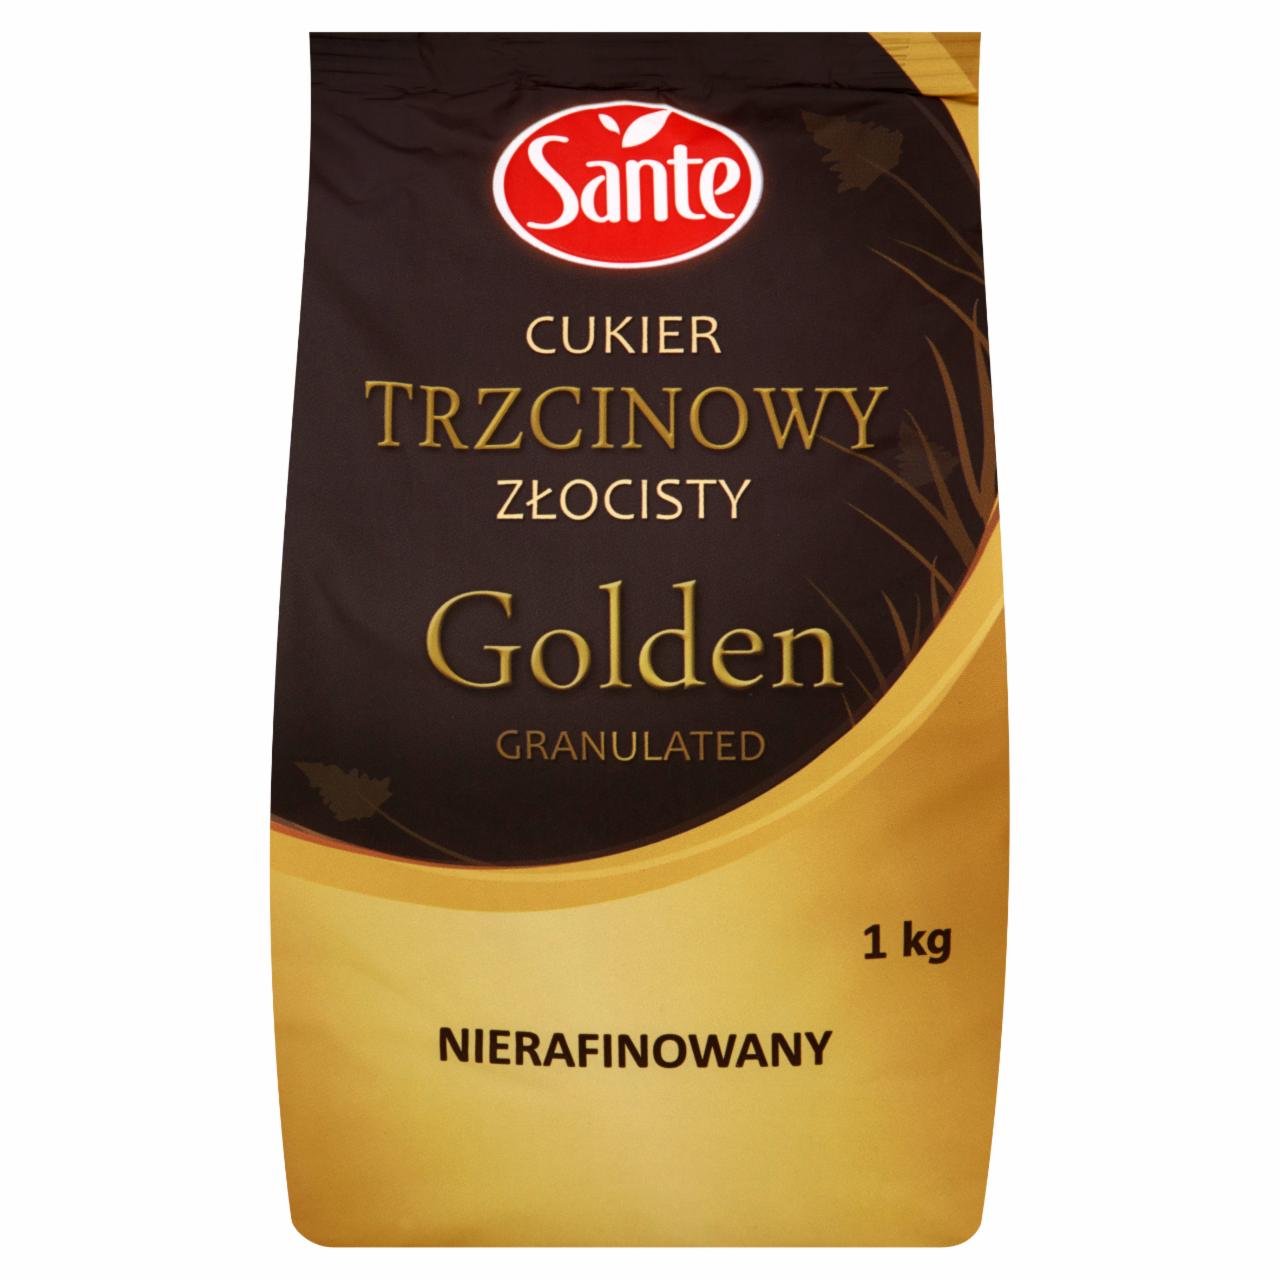 Zdjęcia - Sante Golden Granulated Cukier trzcinowy złocisty nierafinowany 1 kg